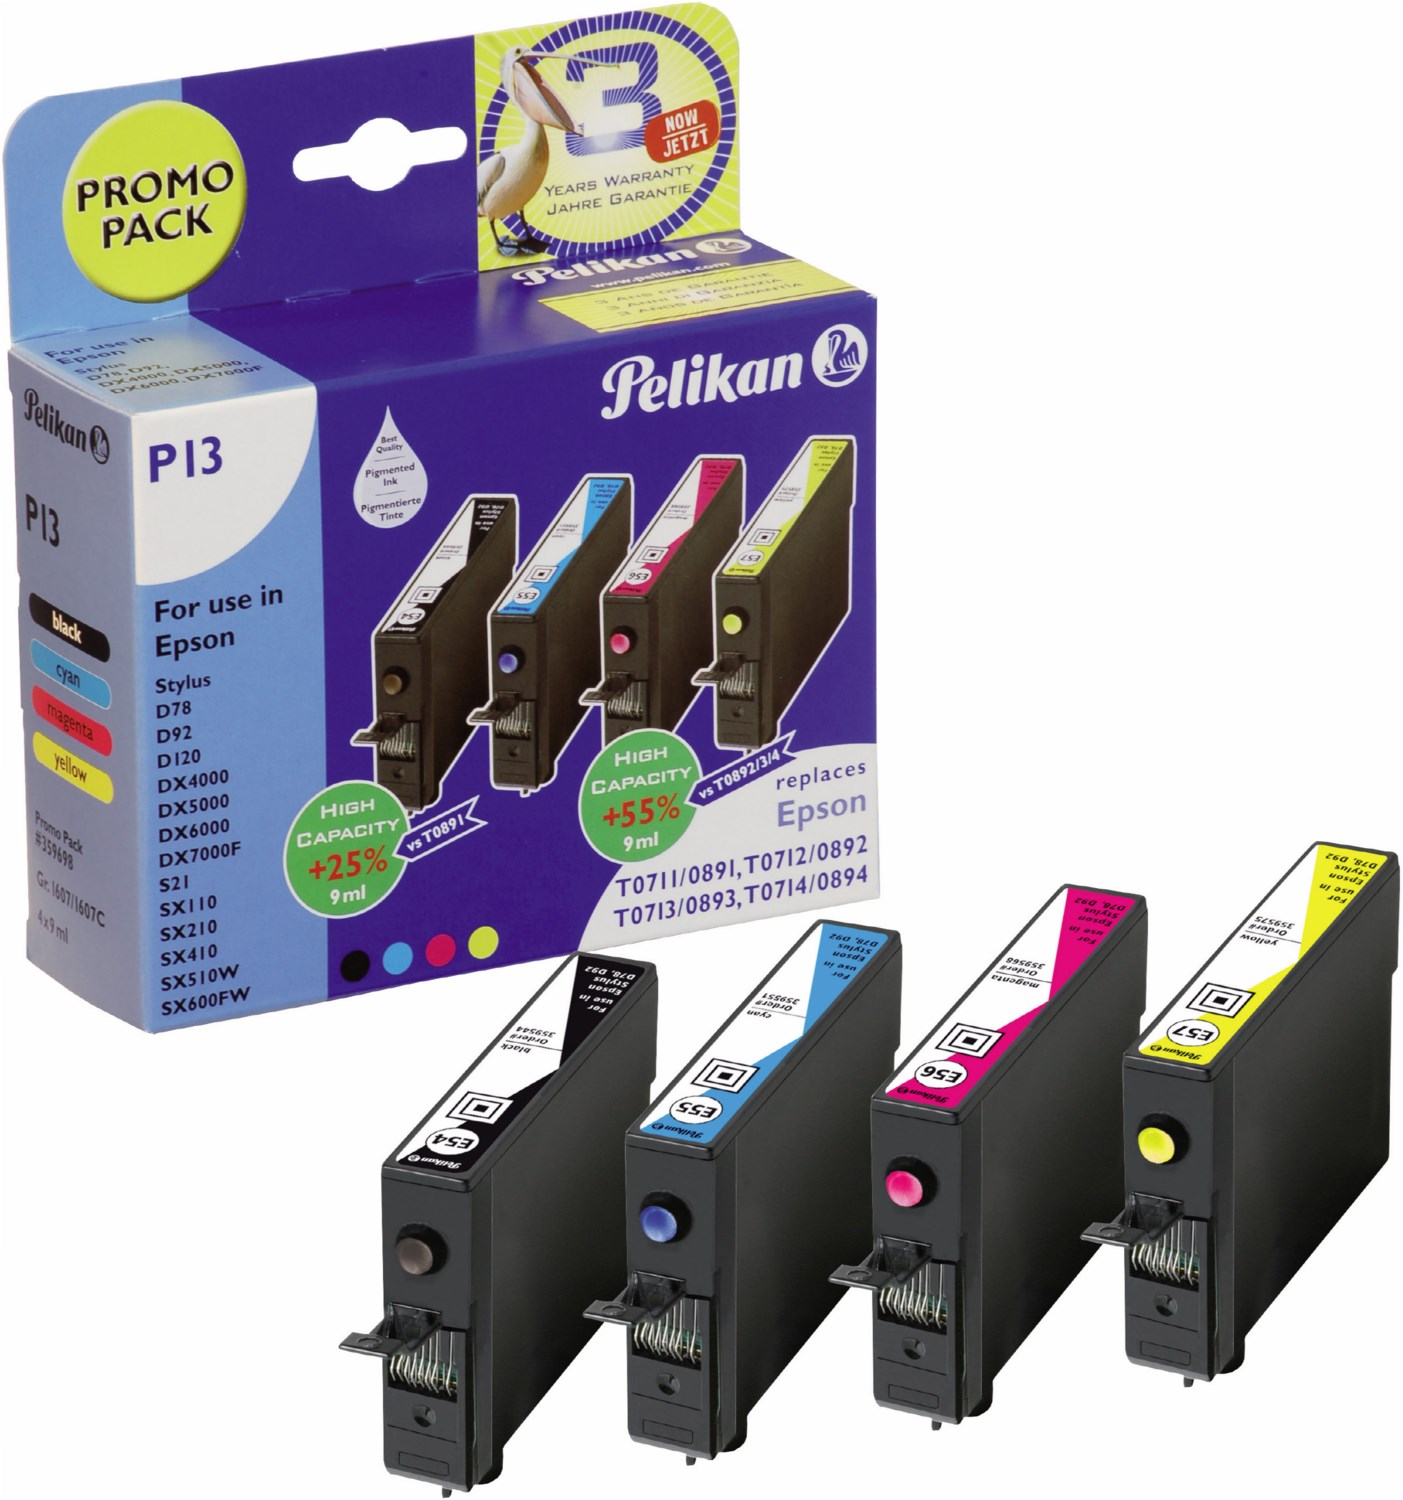 P13 Tinten-Multipack ersetzt Epson T07154010 4-farbig